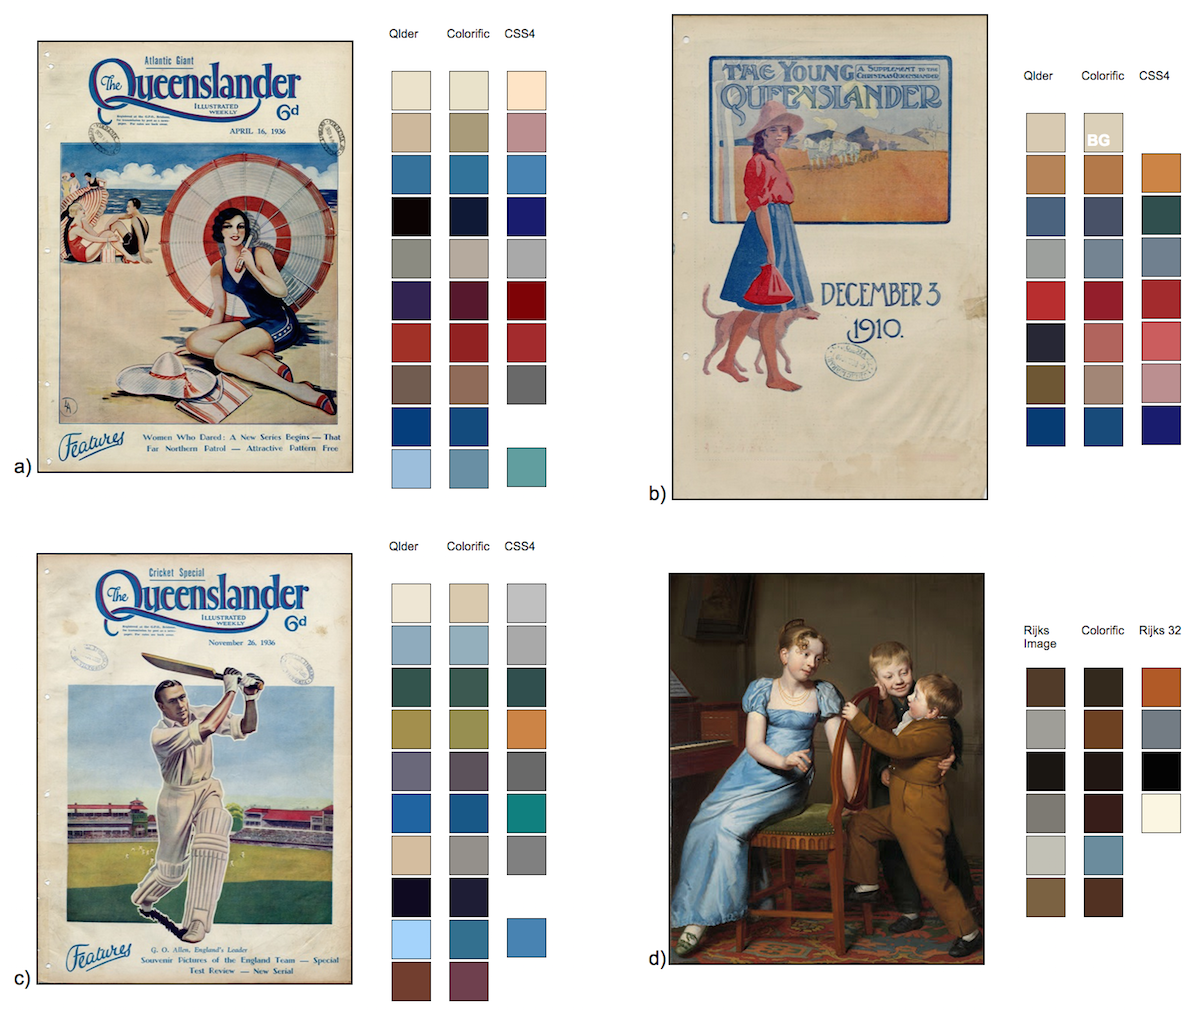 Figure 1: Comparisons of Queenslander, Rikjsmuseum and Colorific image palettes.